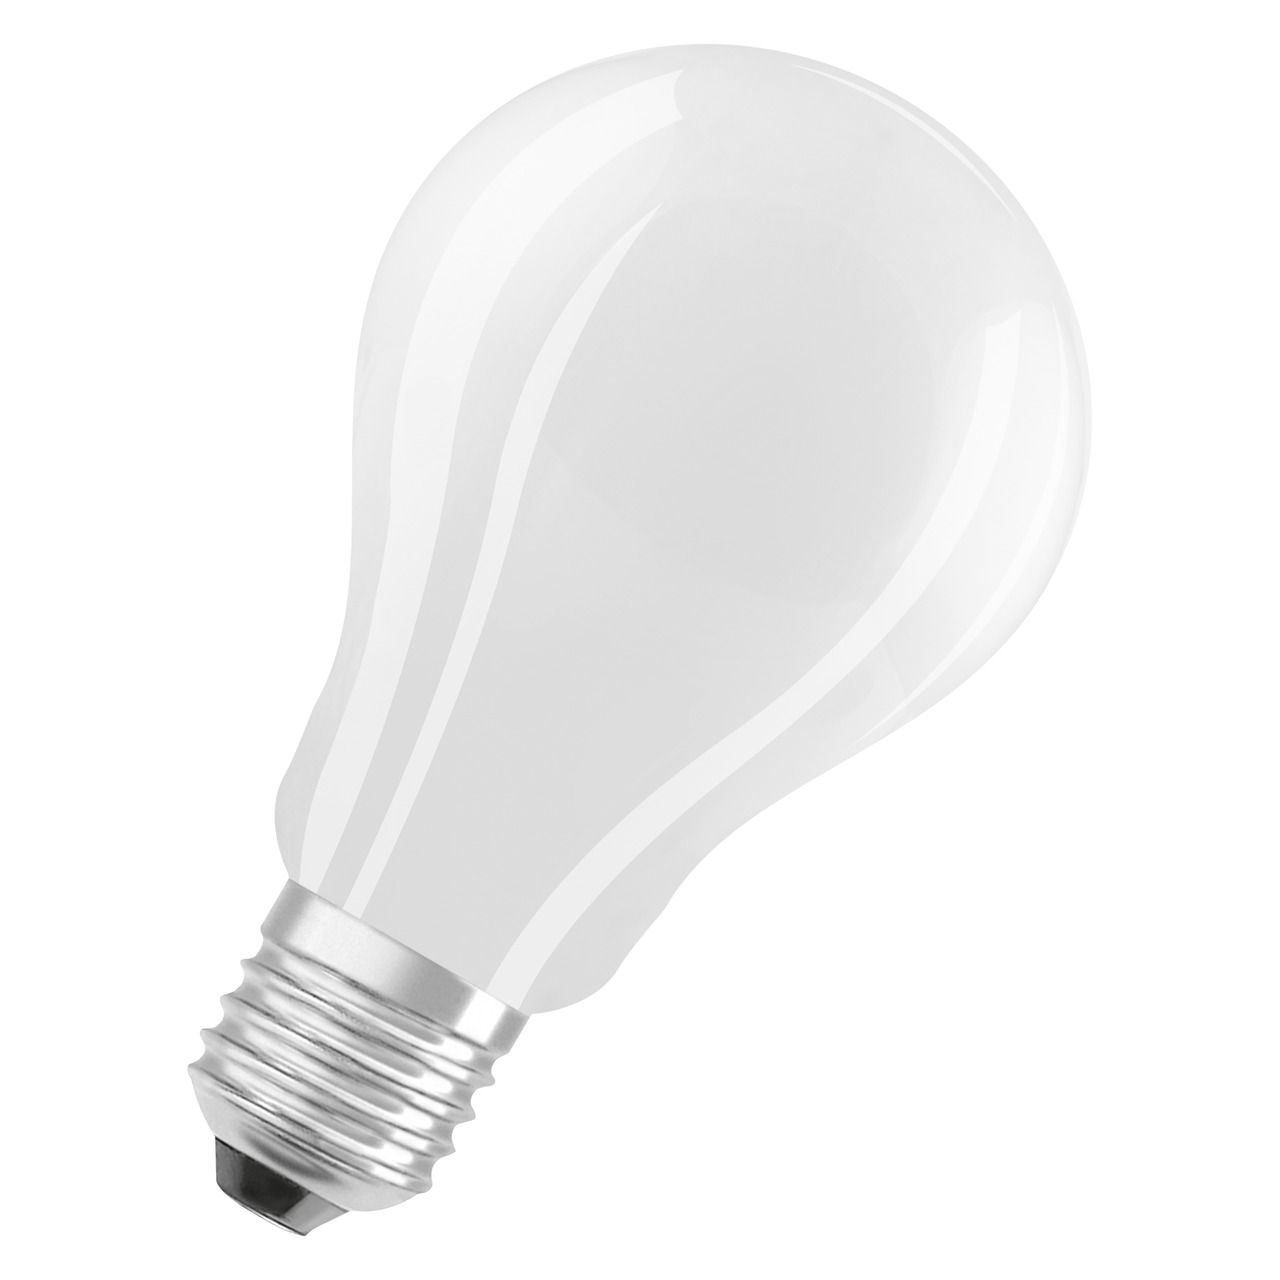 OSRAM 17-W-LED-Lampe A70- E27- 2452 lm- neutralweiss- matt